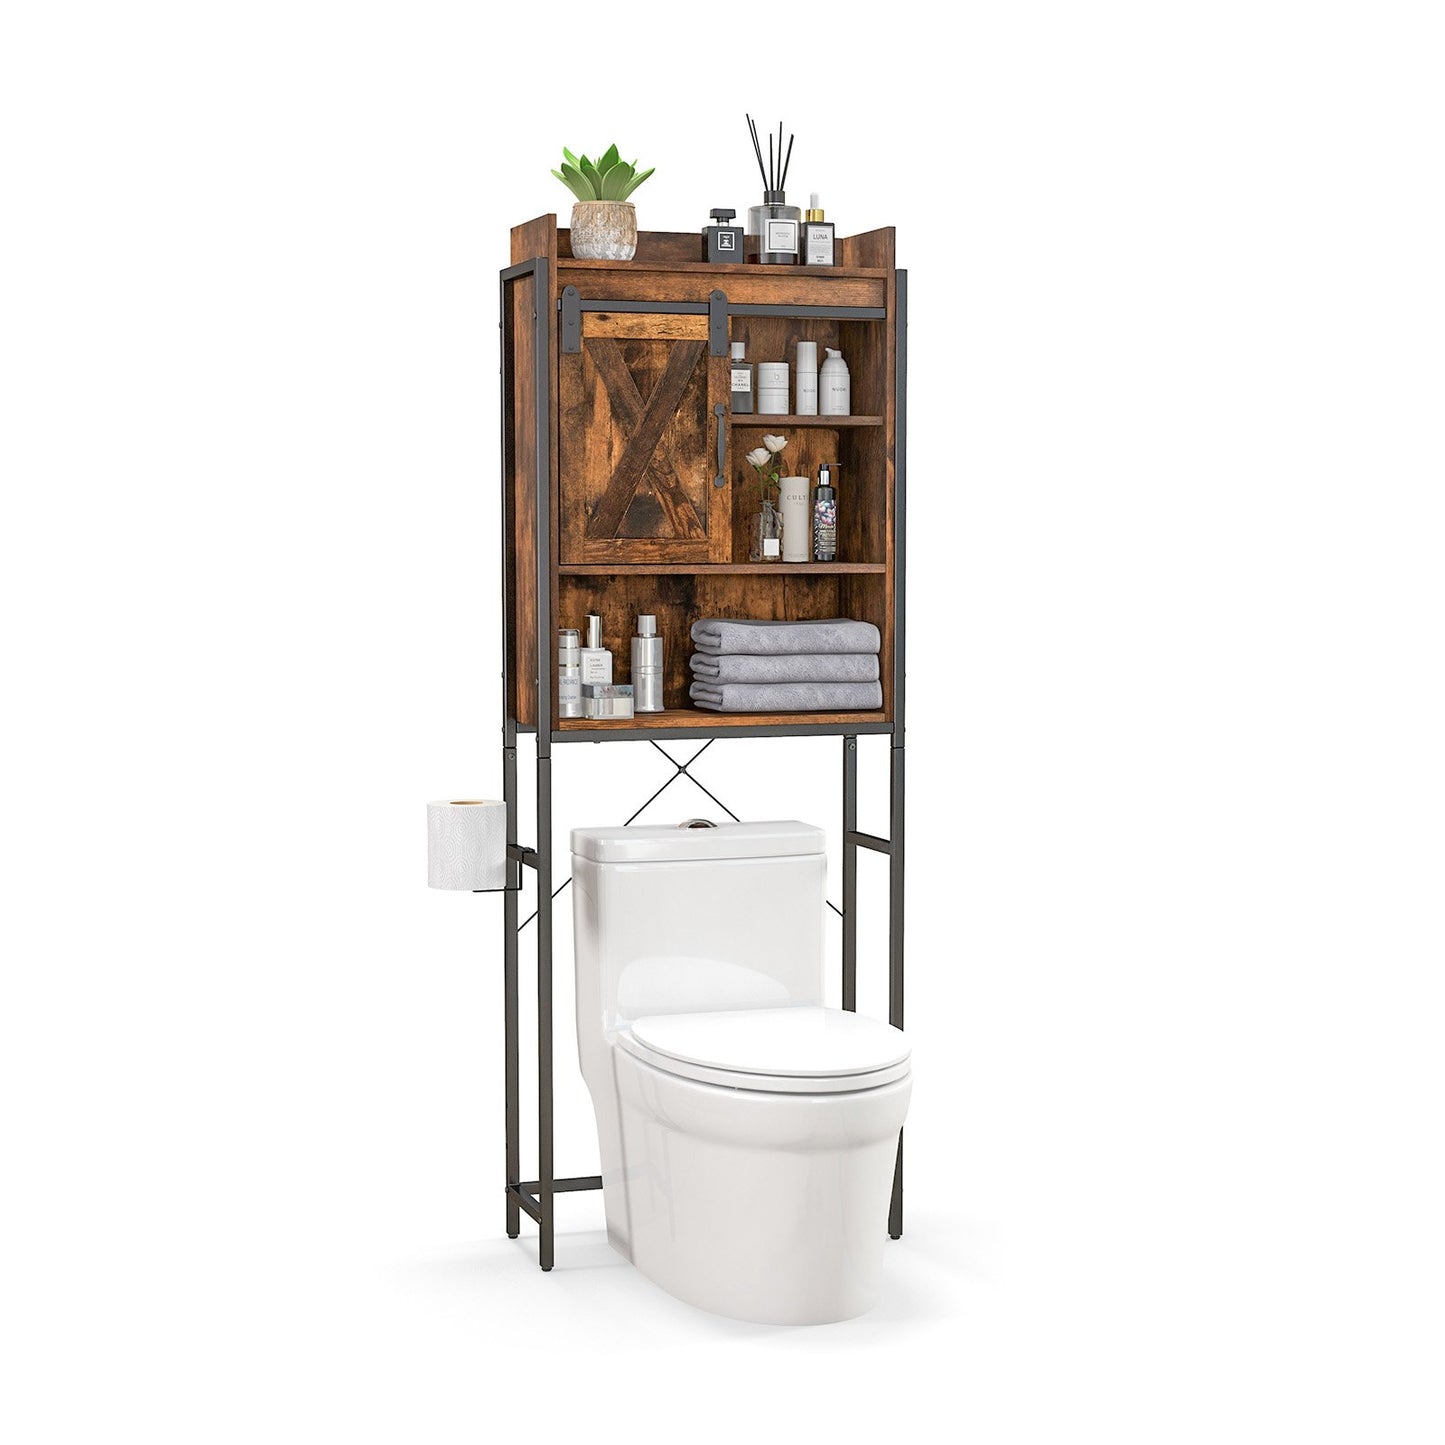 4-Tier Multifunctional Toilet Sorage Cabinet with Adjustable Shelf and Sliding Barn Door, Rustic Brown